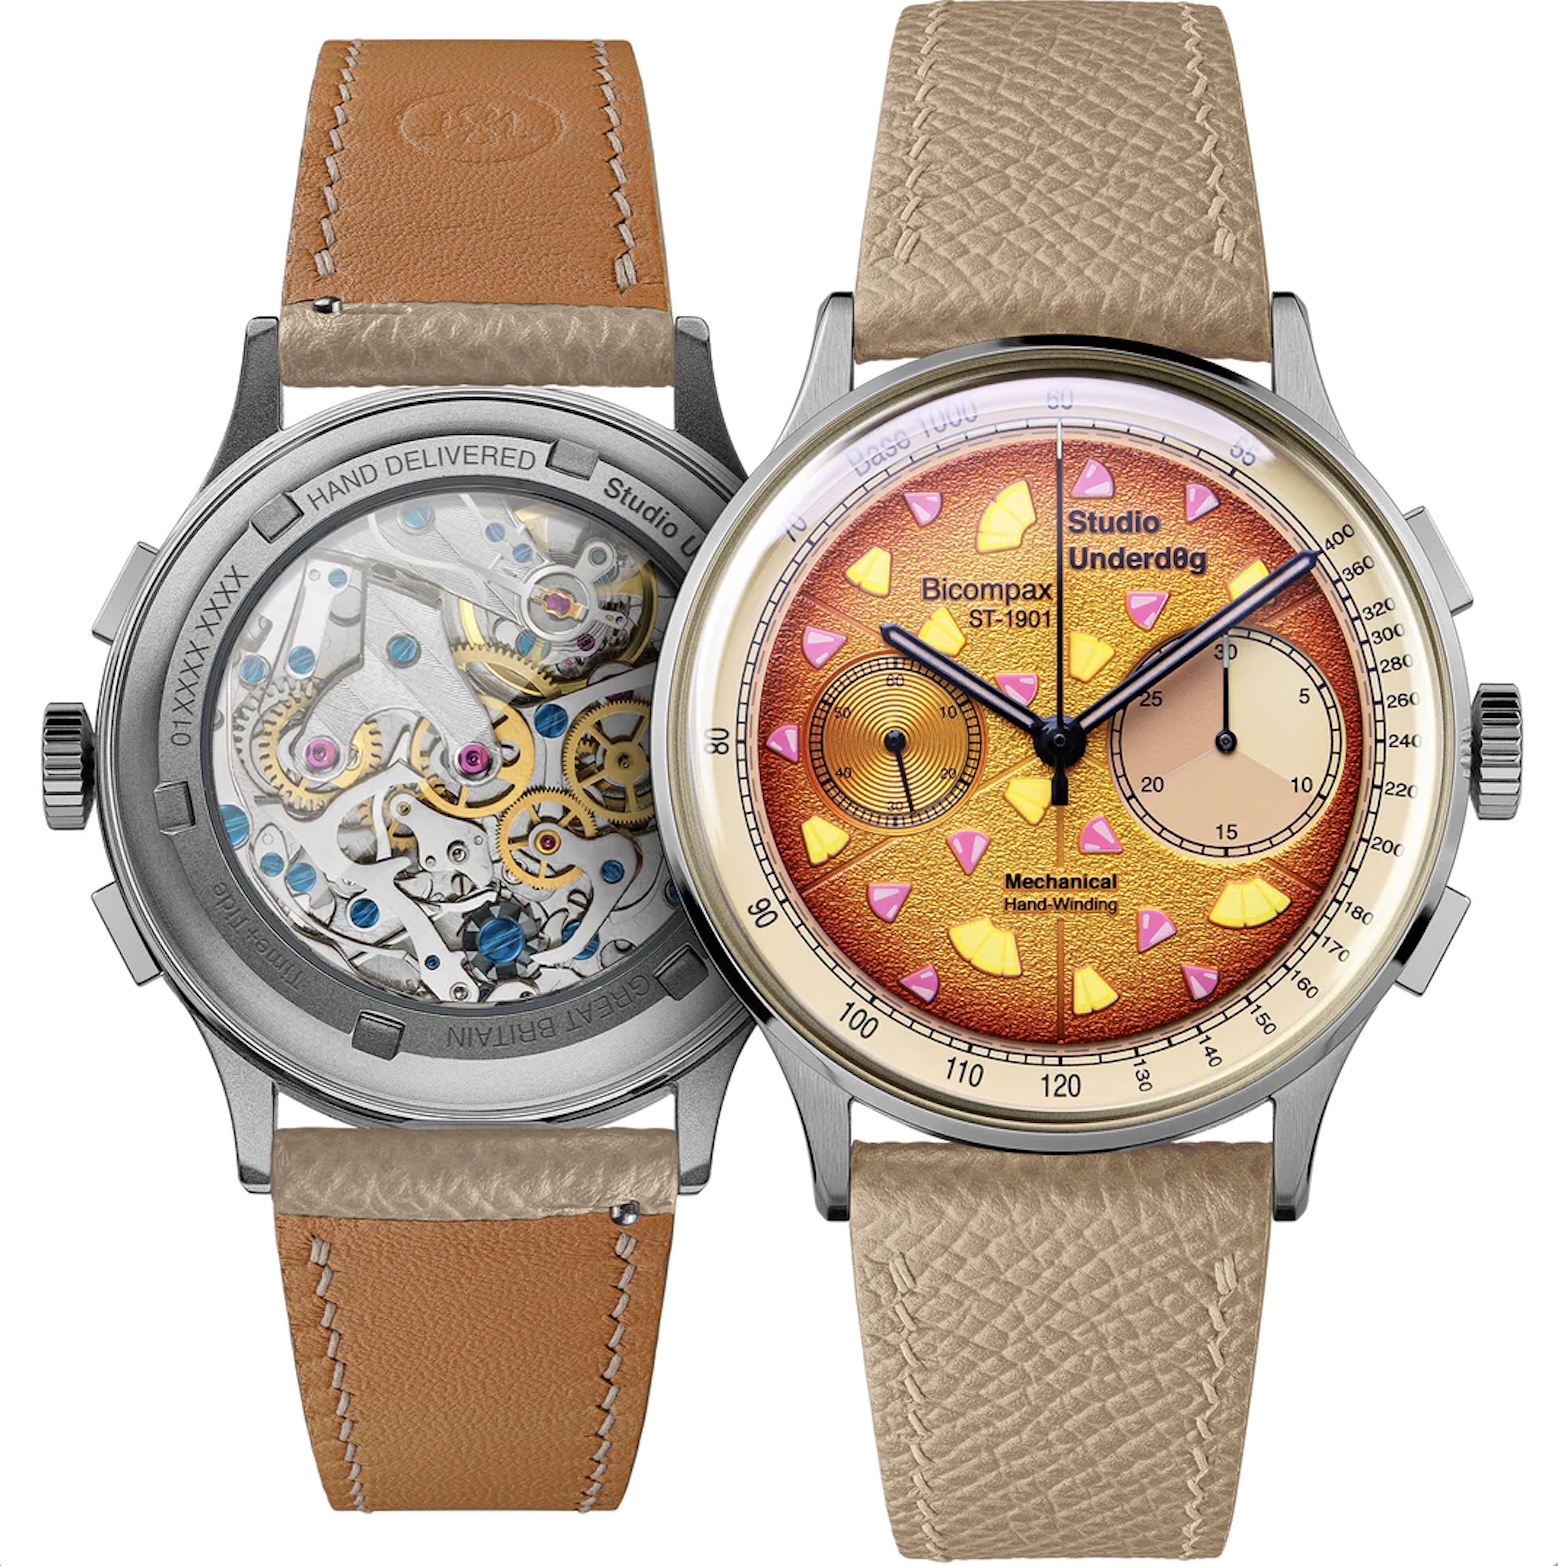 Vente de joints de montre au détail pour passionnés d'horlogerie